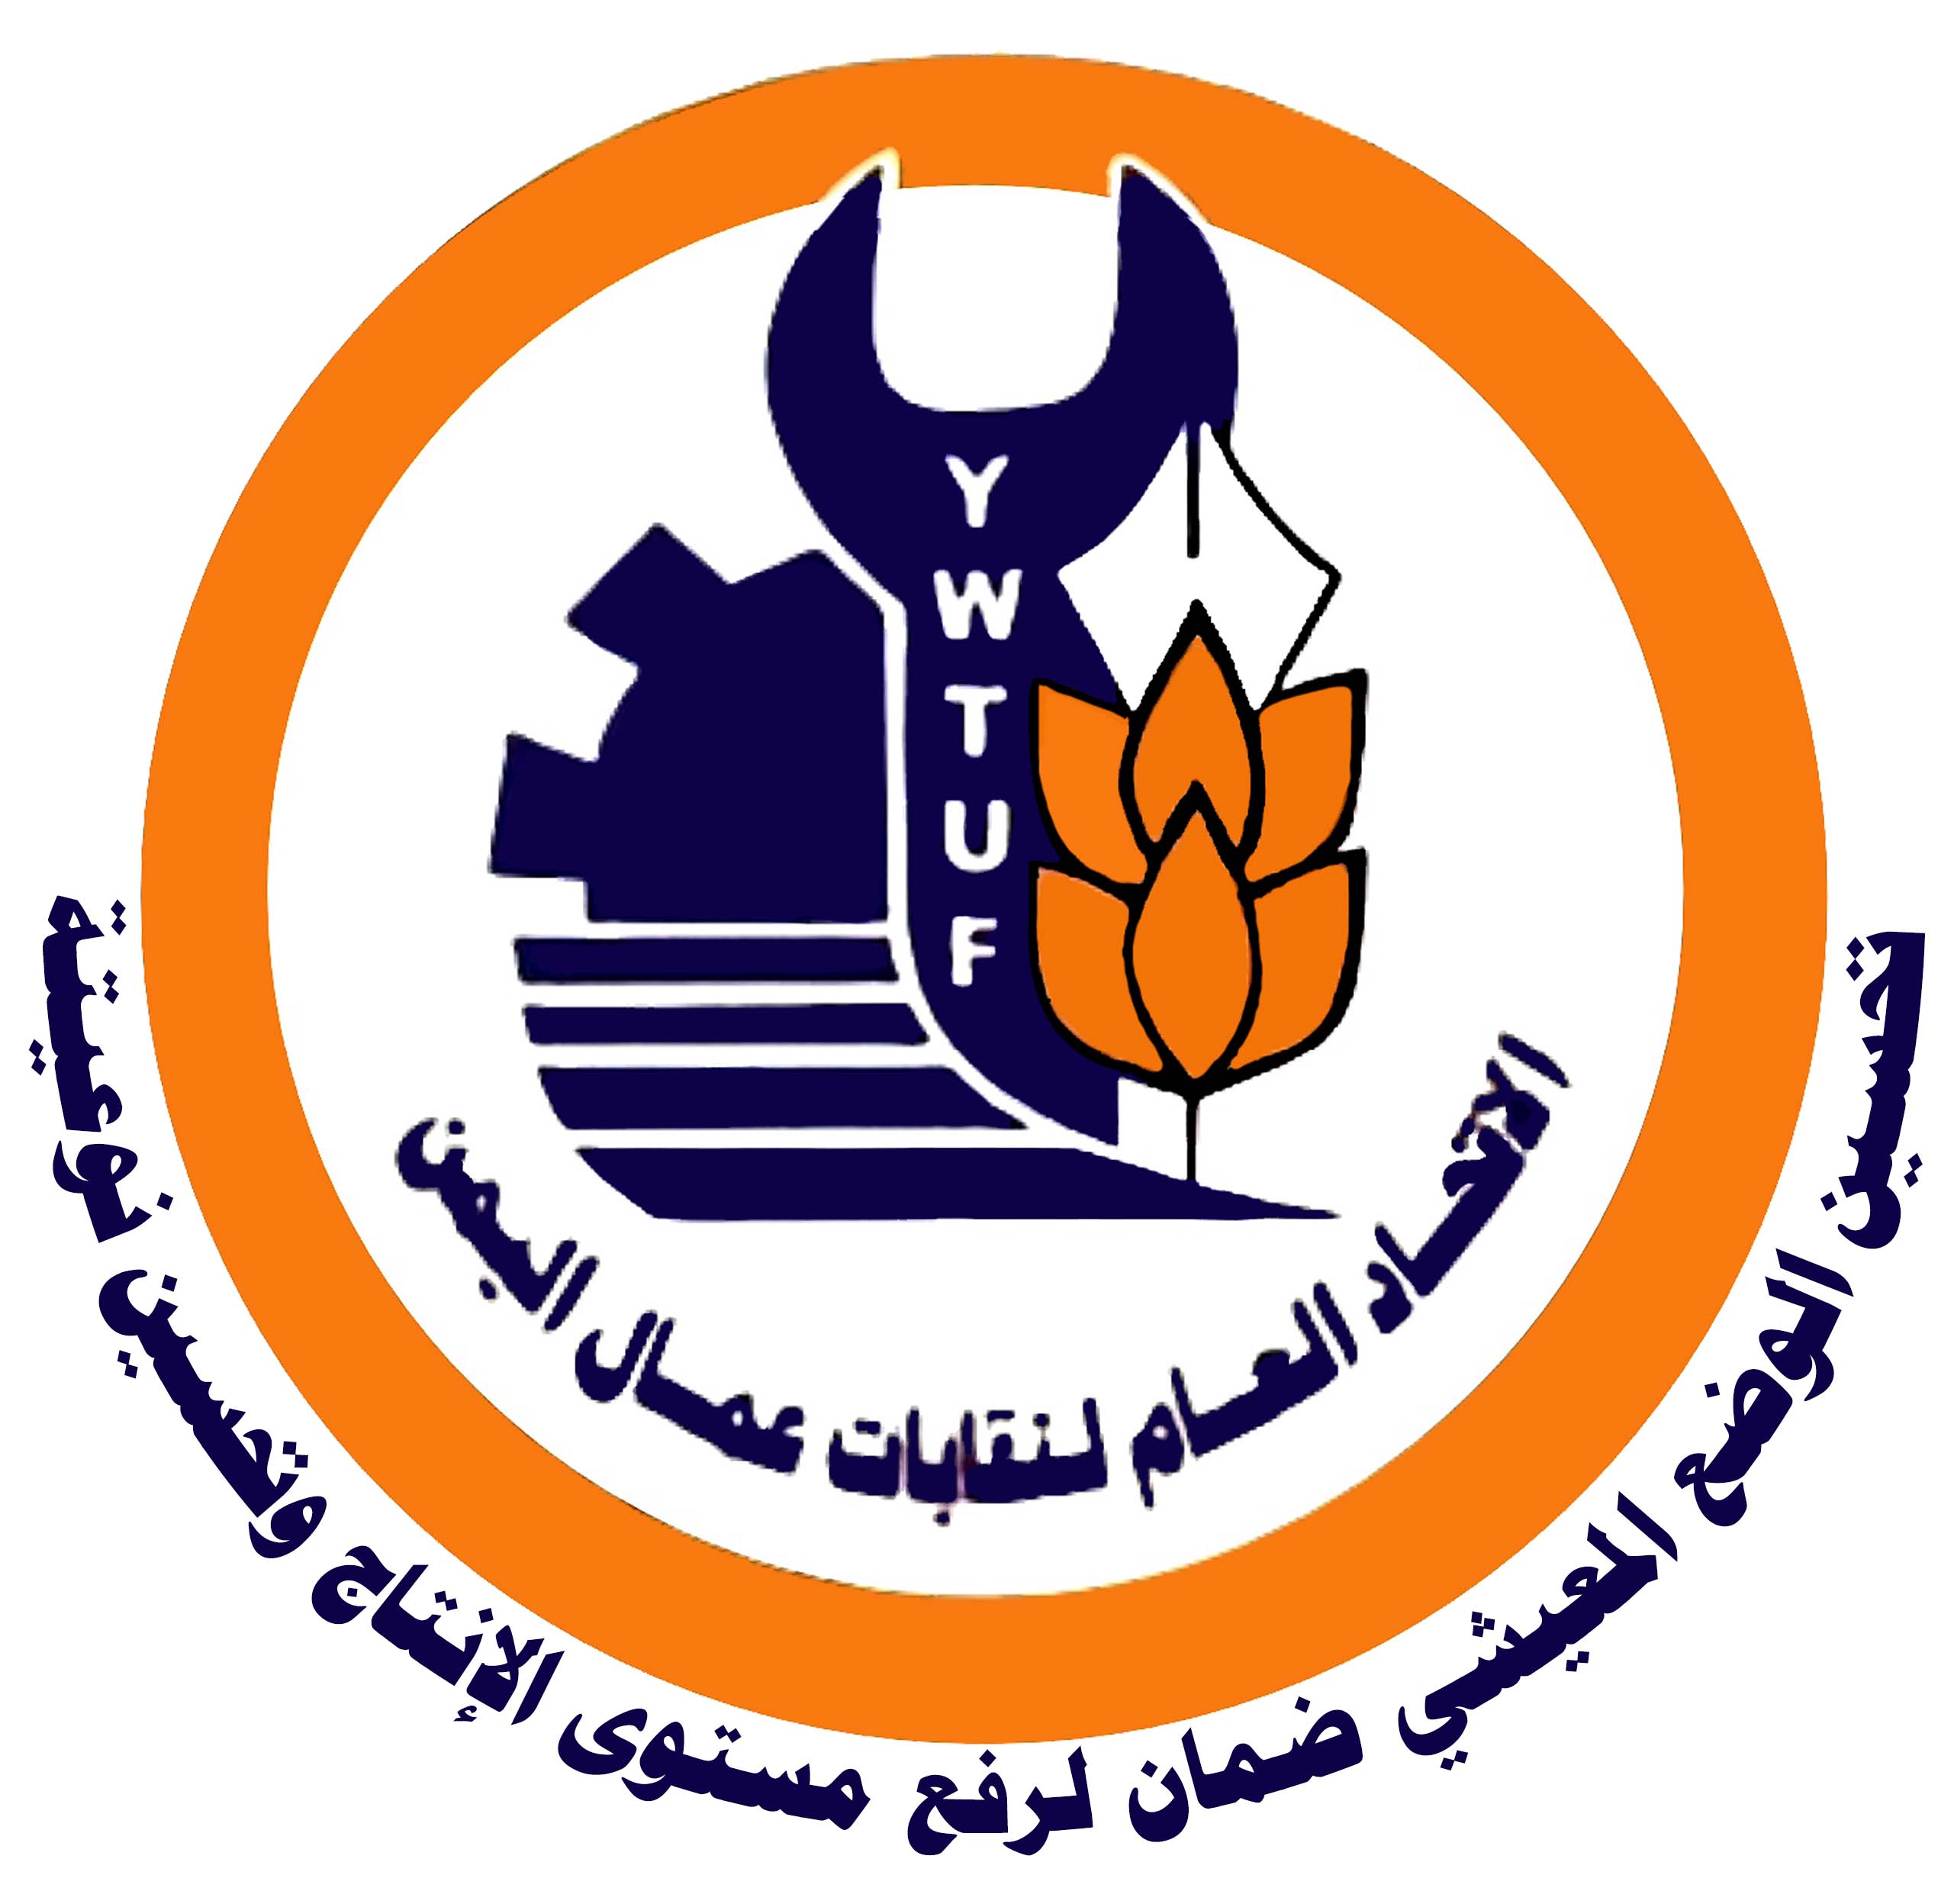   الاتحاد العام لنقابات عمال اليمن